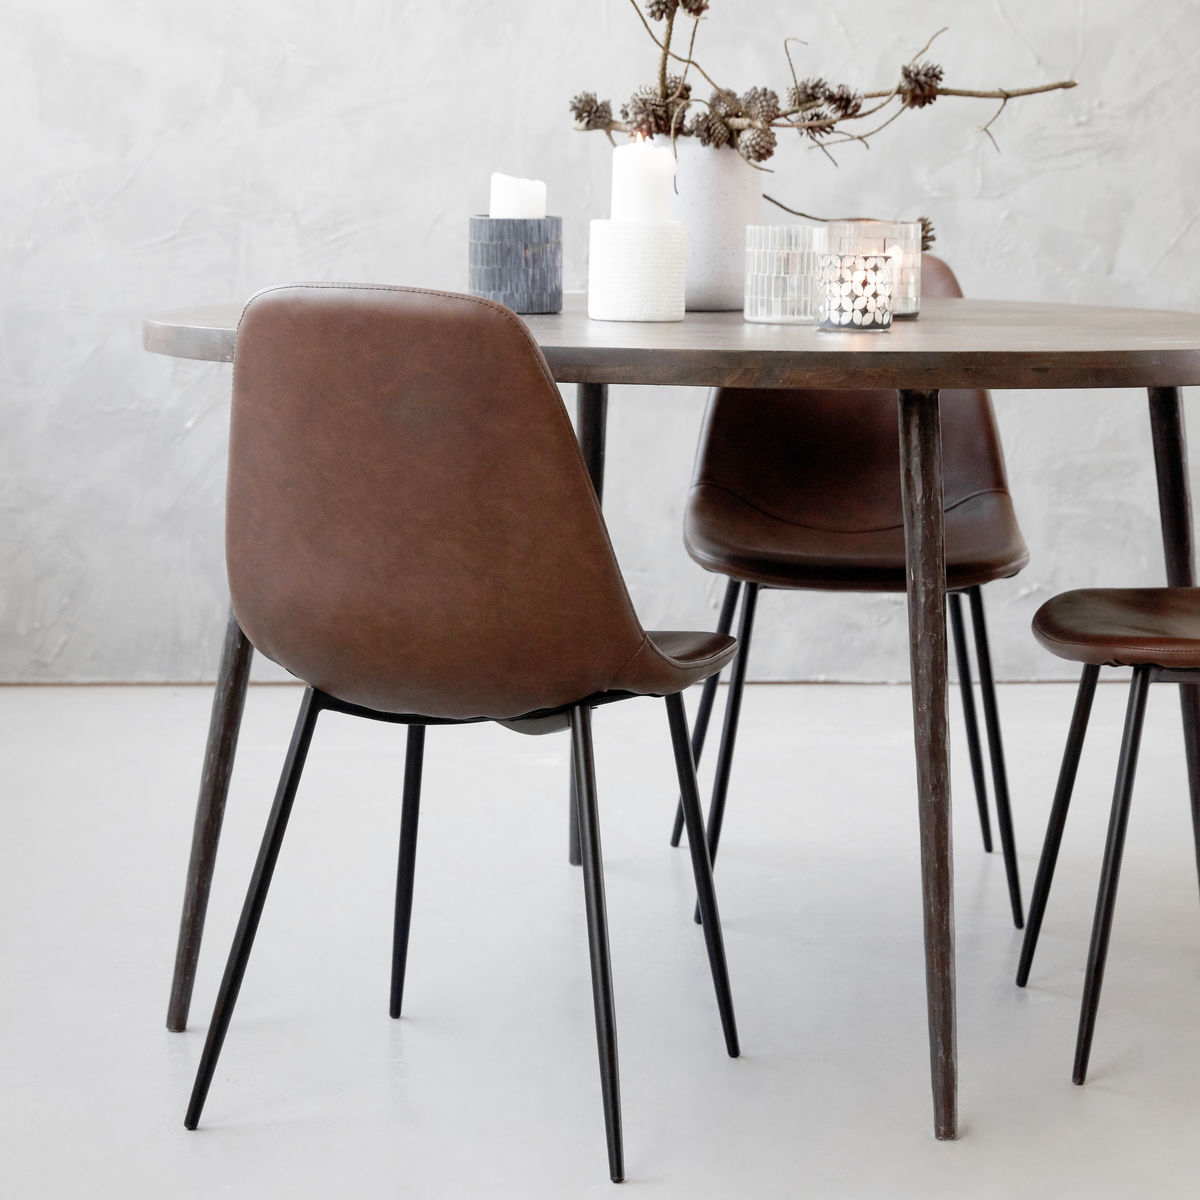 Stuhl, Found in Braun präsentiert im Onlineshop von KAQTU Design AG. Stuhl ist von House Doctor